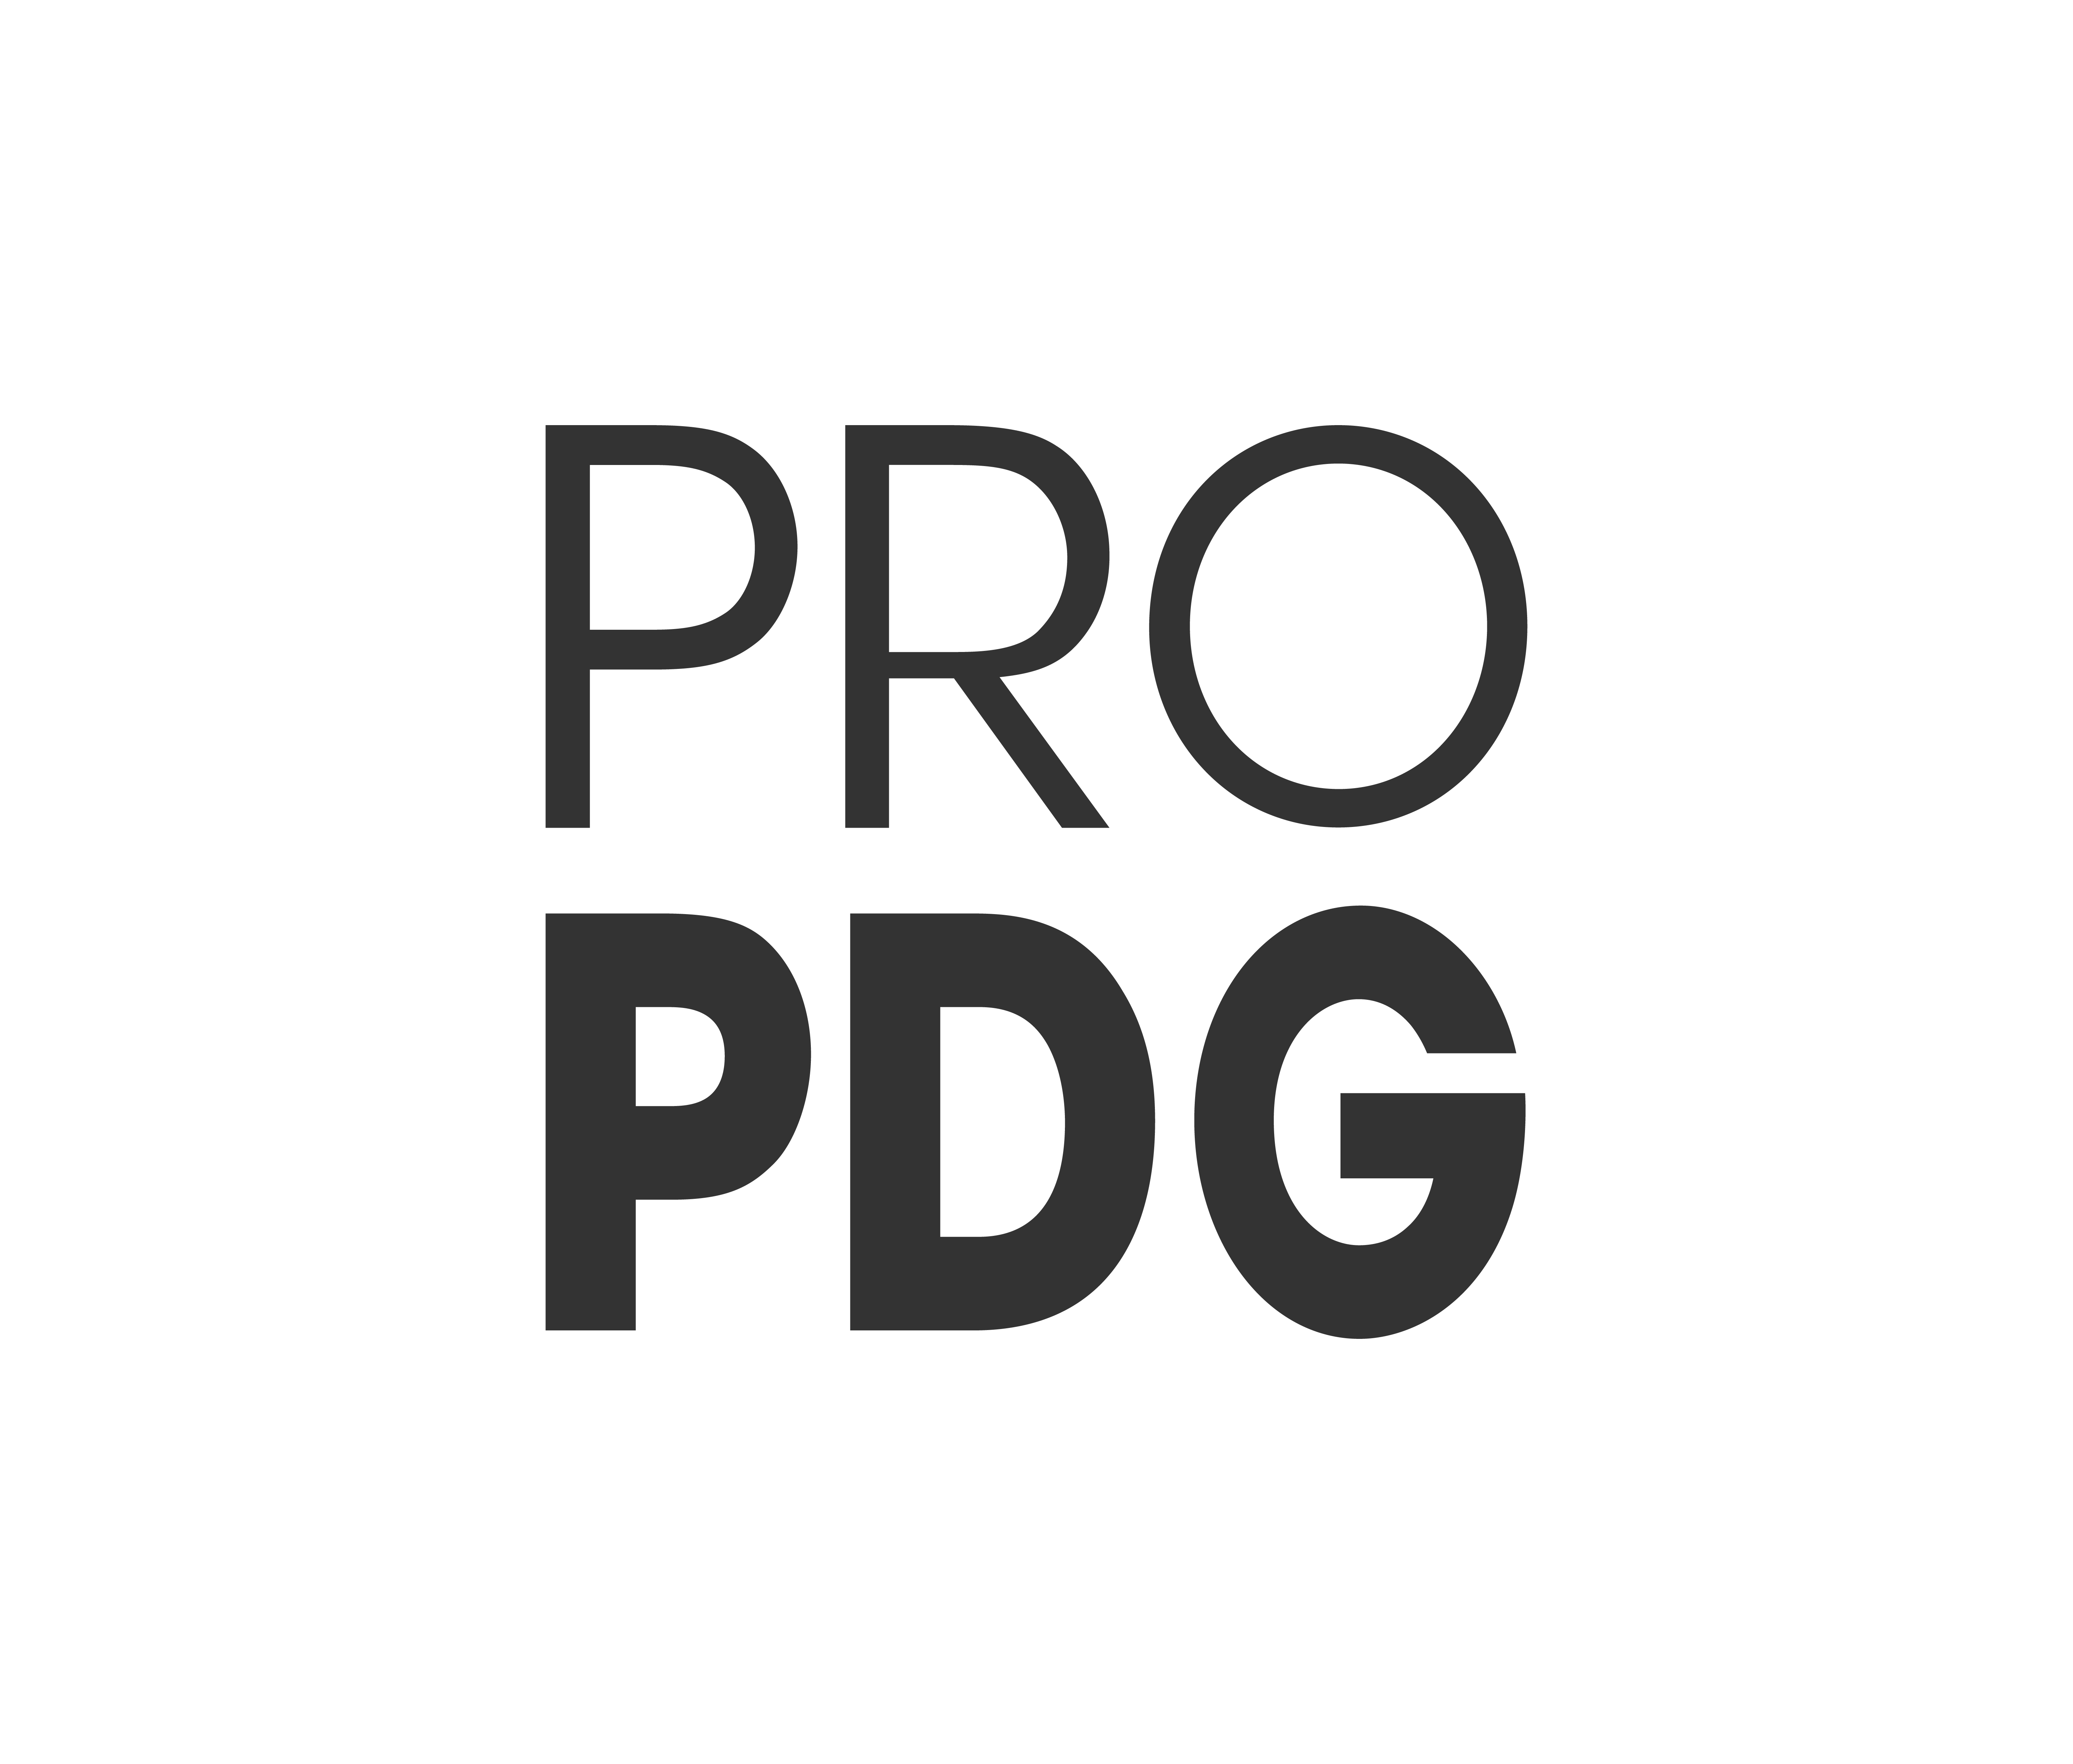 Pro PDG